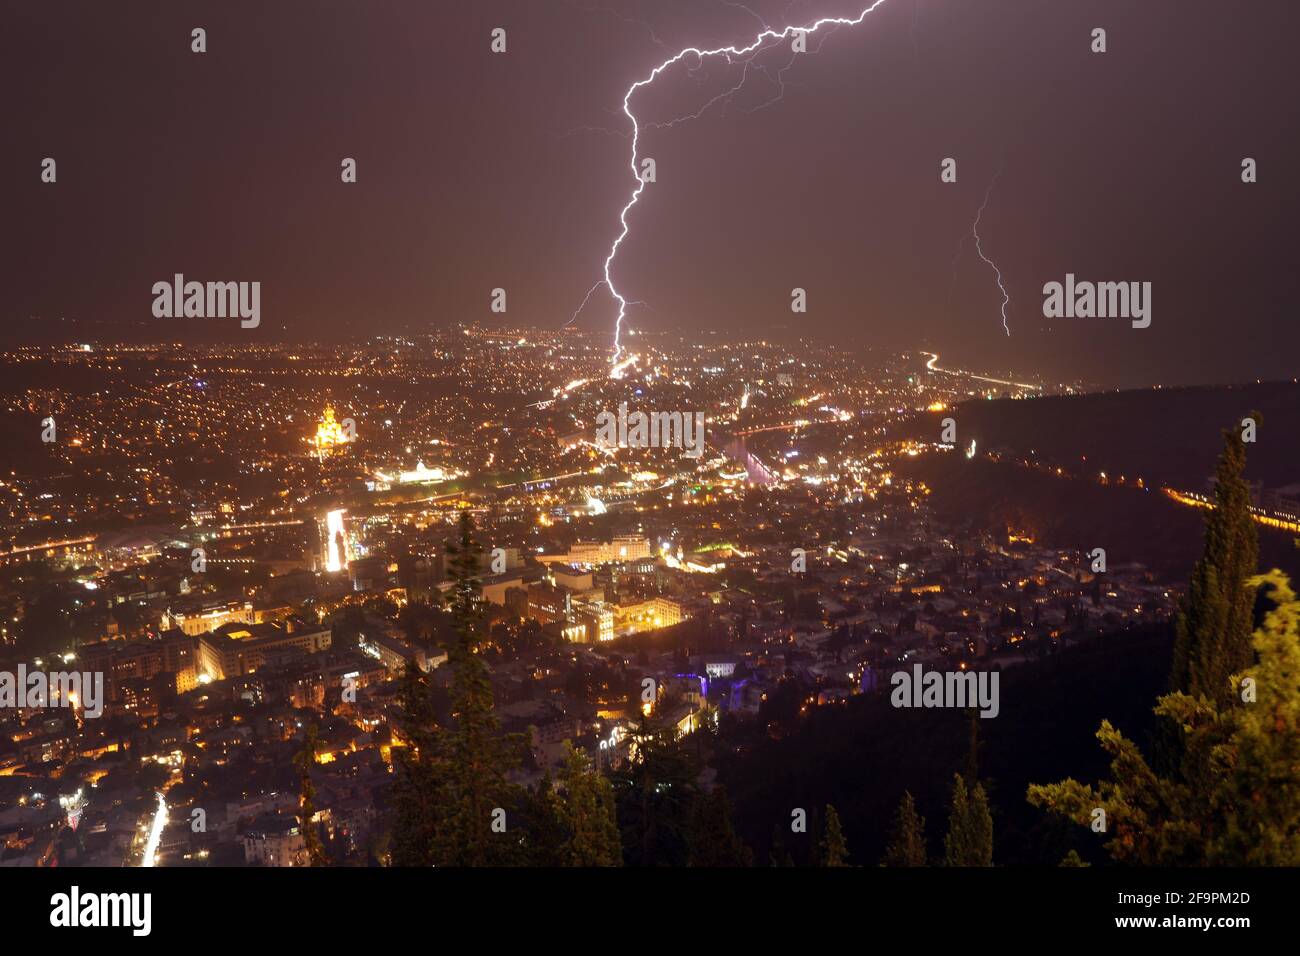 20.07.2018, Tbilisi, Tbilisi, Georgia - Vista sulla città di notte durante la tempesta di fulmini. 00S180720D426CAROEX.JPG [VERSIONE DEL MODELLO: NON AP Foto Stock